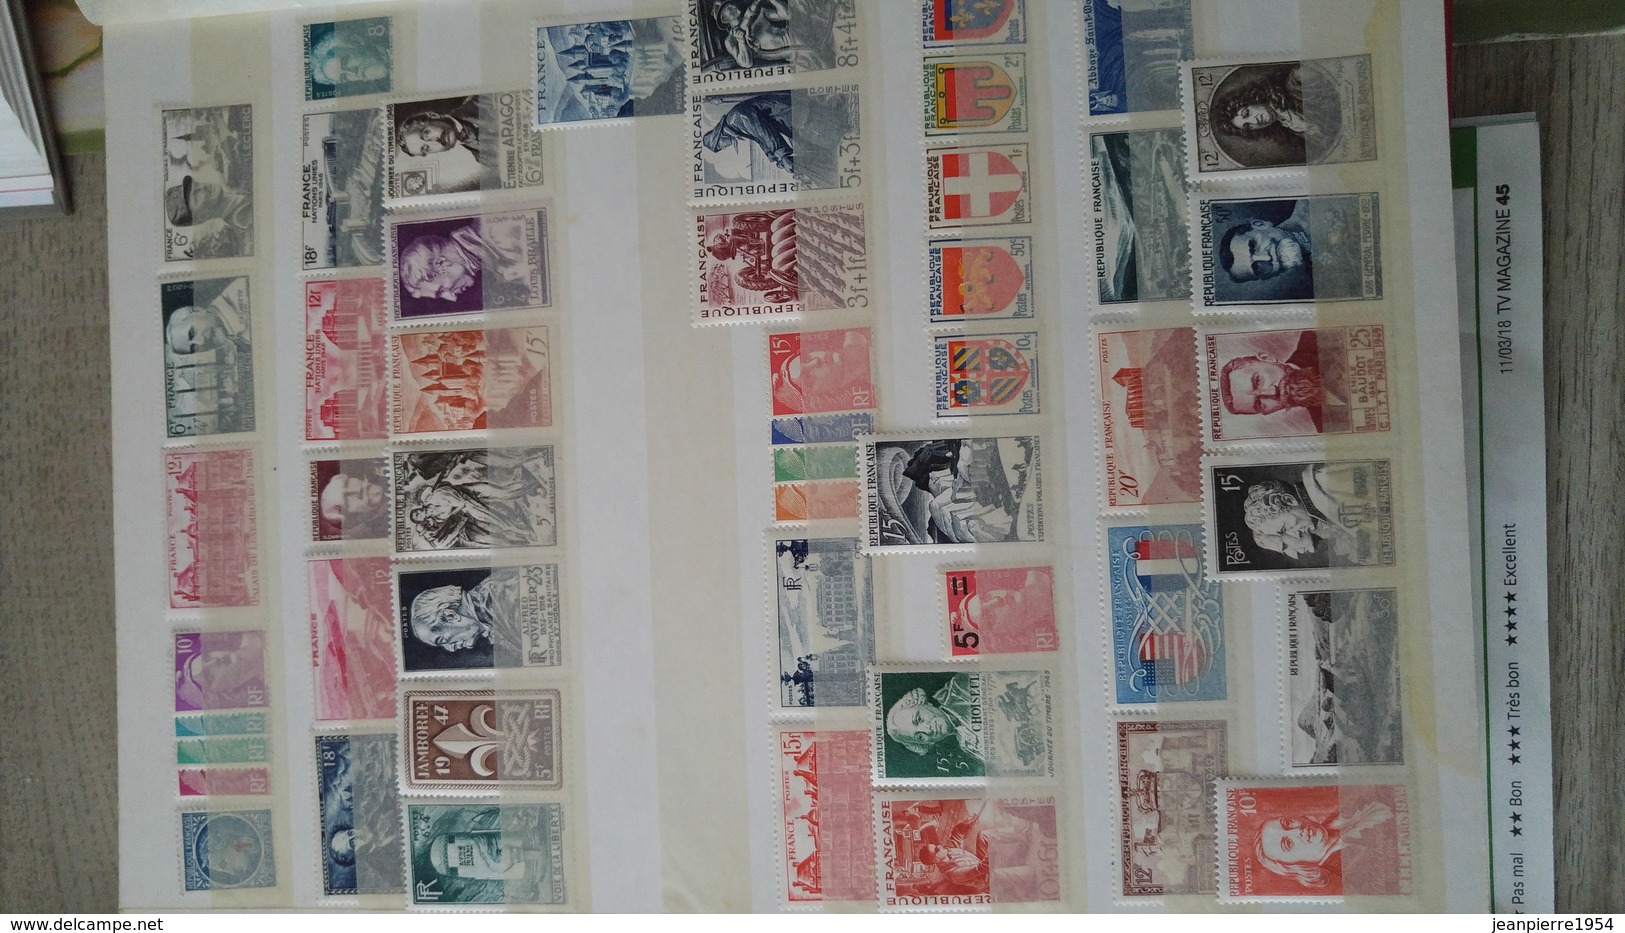 anciens timbres dfrançais oblitere